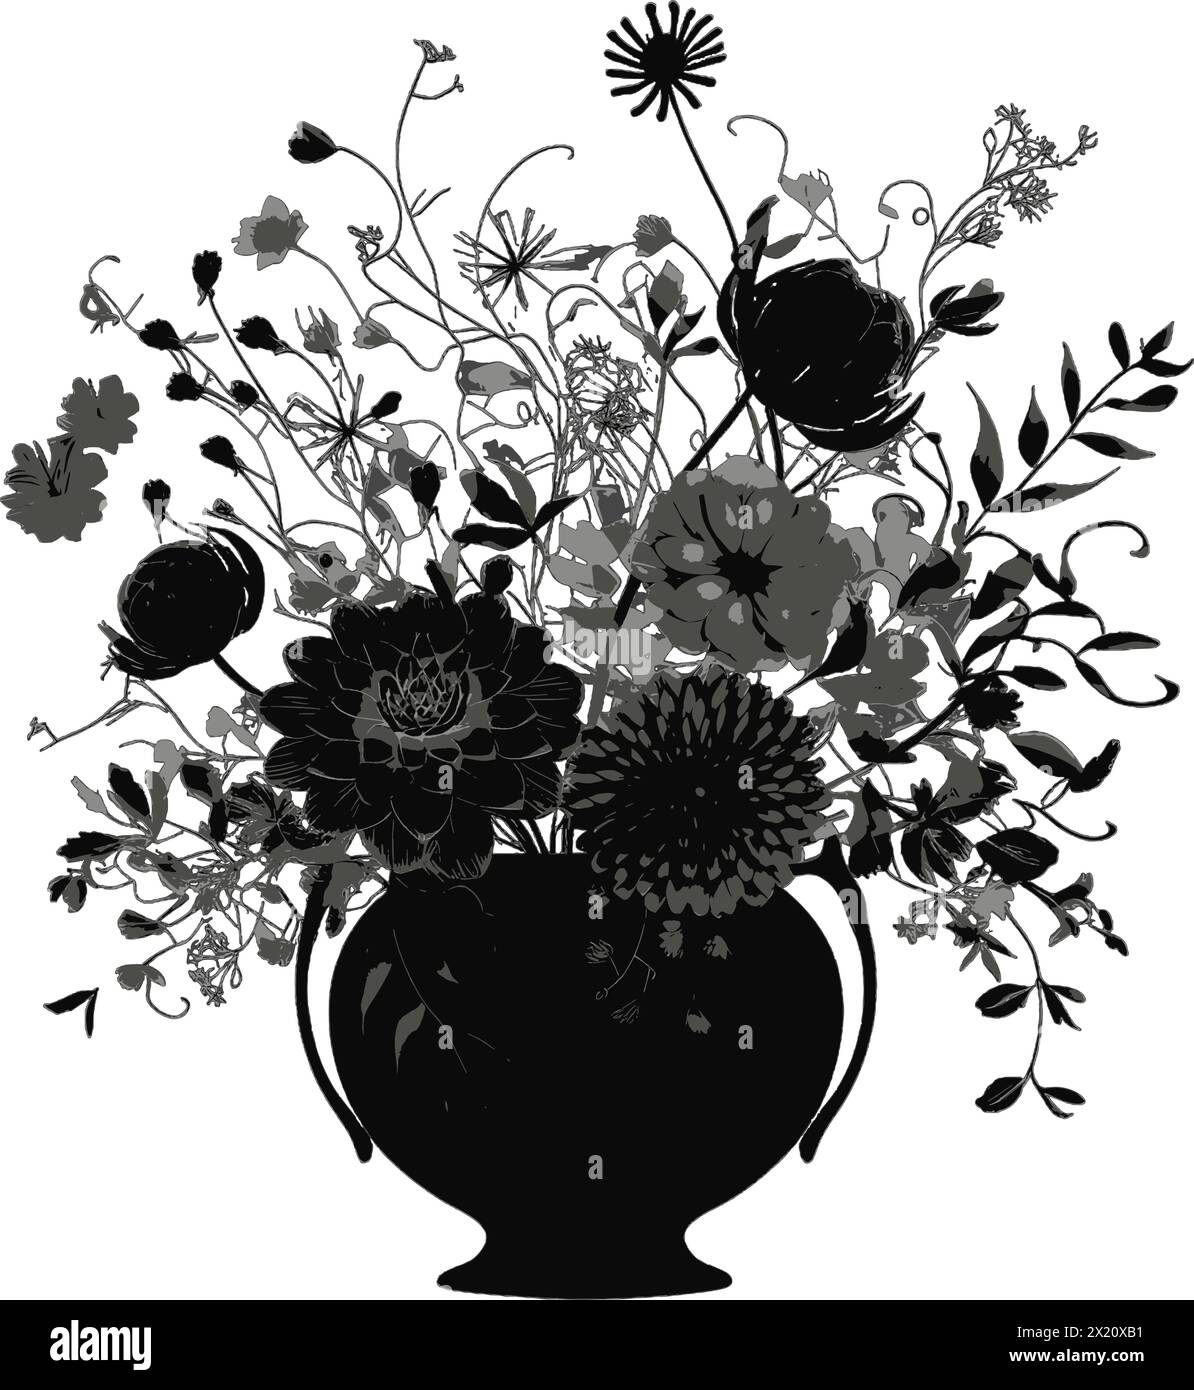 Illustration vectorielle de fleurs dans un vase en silhouette noire sur un fond blanc propre, capturant des formes gracieuses. Illustration de Vecteur